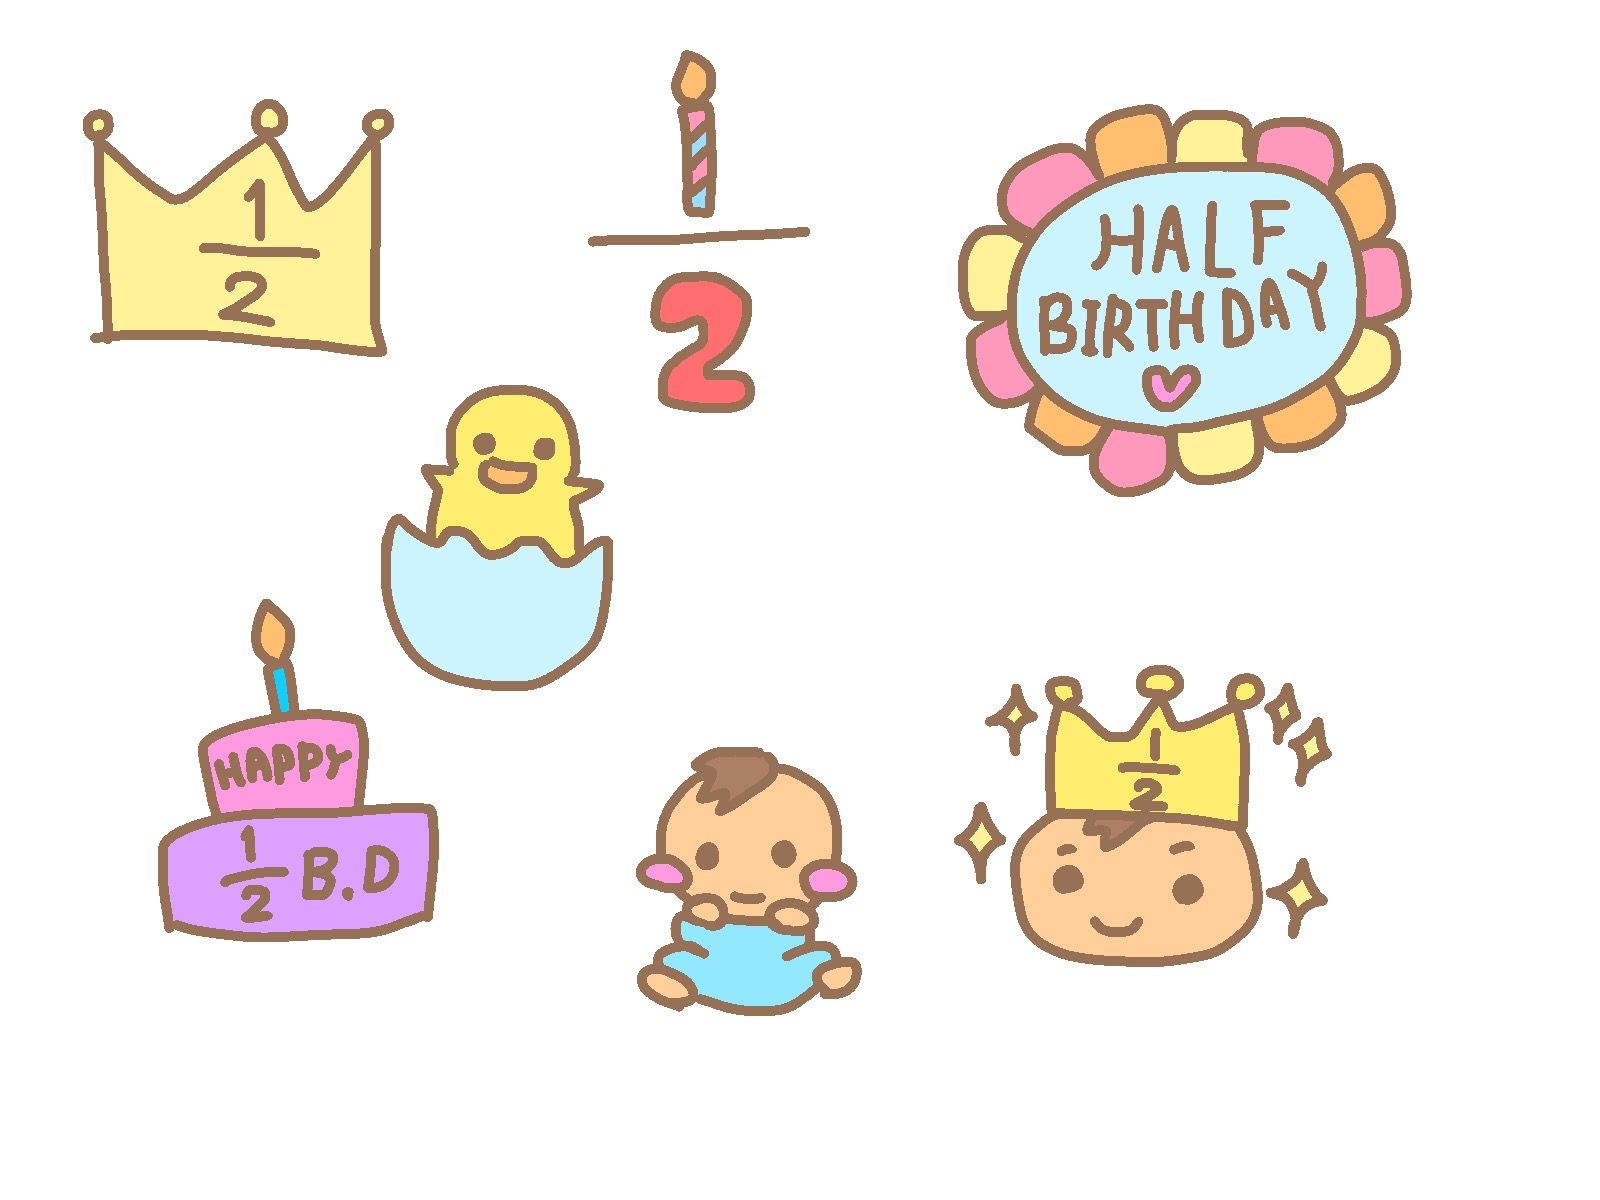 [5月21日] オンラインでハーフバースデーパーティー☆ 6か月の成長をみんなでお祝いしましょう♪